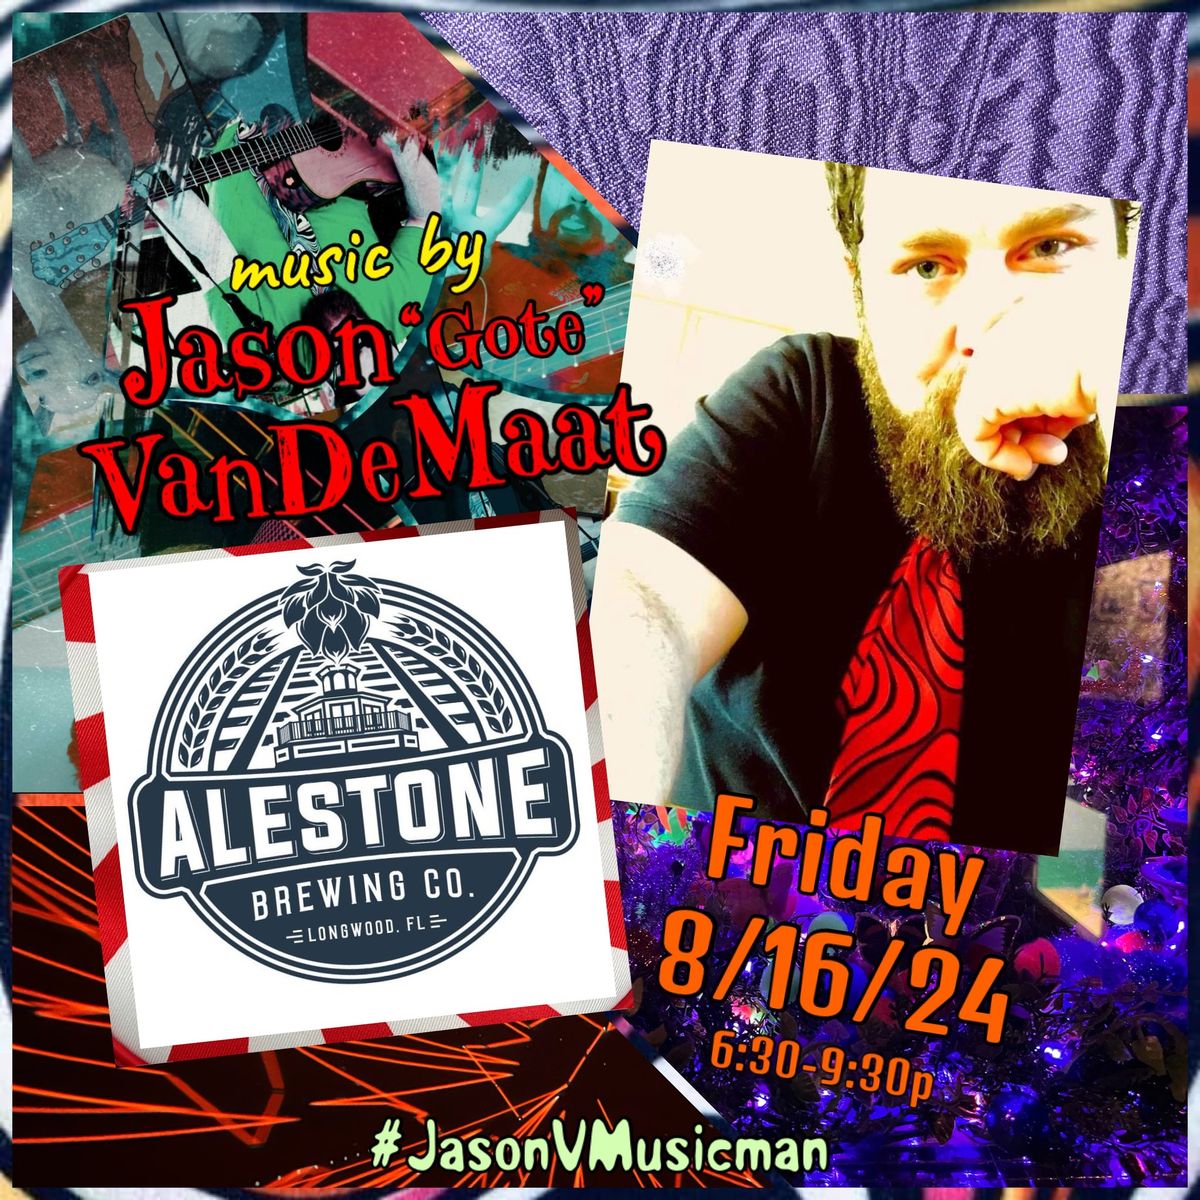 Jason V. \u201cGote\u201d @ Alestone Brewing Co., Longwood 